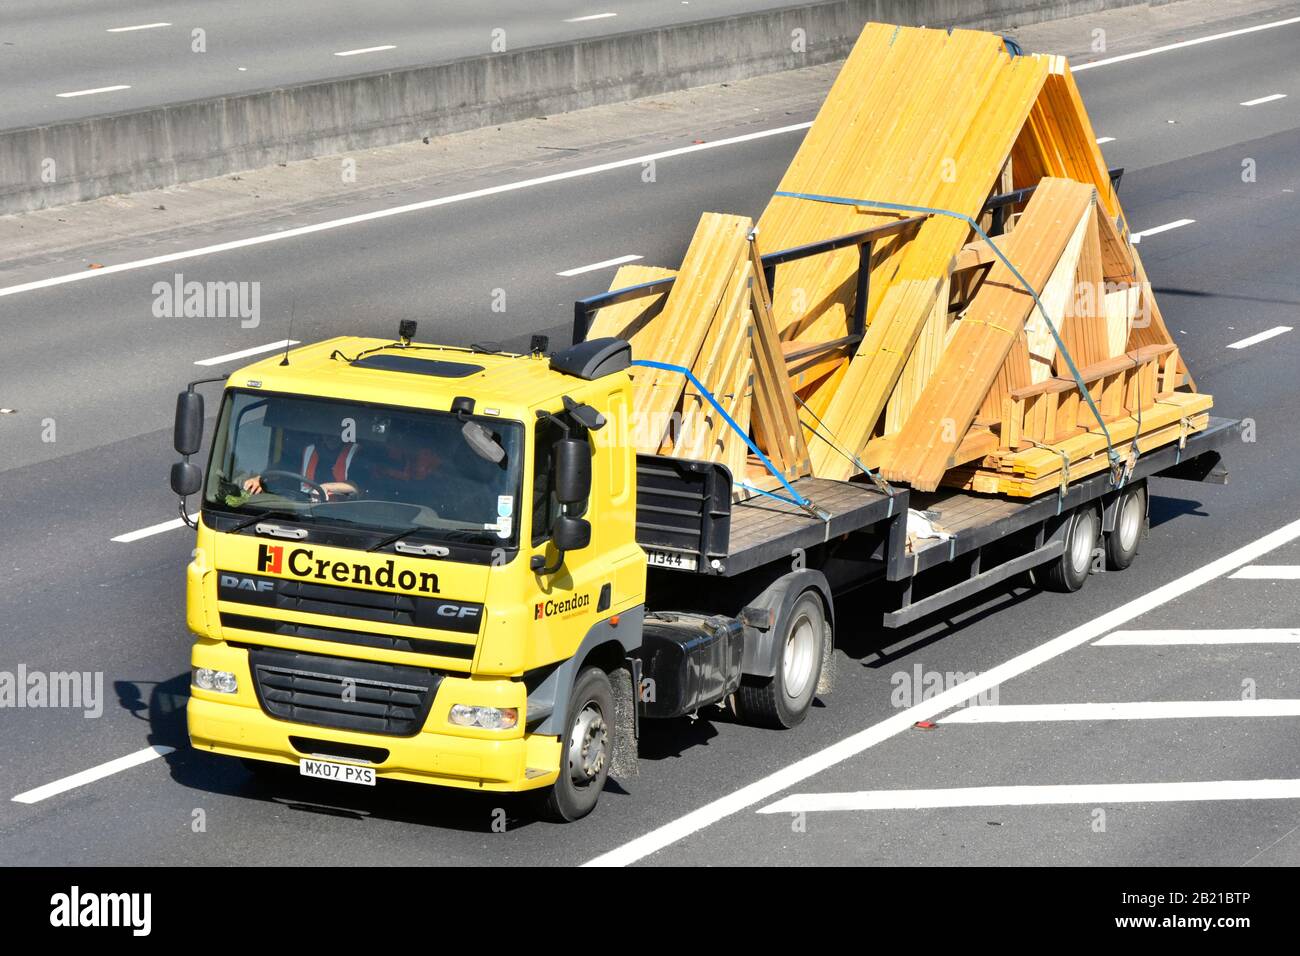 Vorgefertigte Dachtrussel des Unternehmens Crendon Timber Engineering wurden auf der hgv-LKW-LKW-Taxifahrer und Tiefladeranhänger UK-Autobahn transportiert Stockfoto